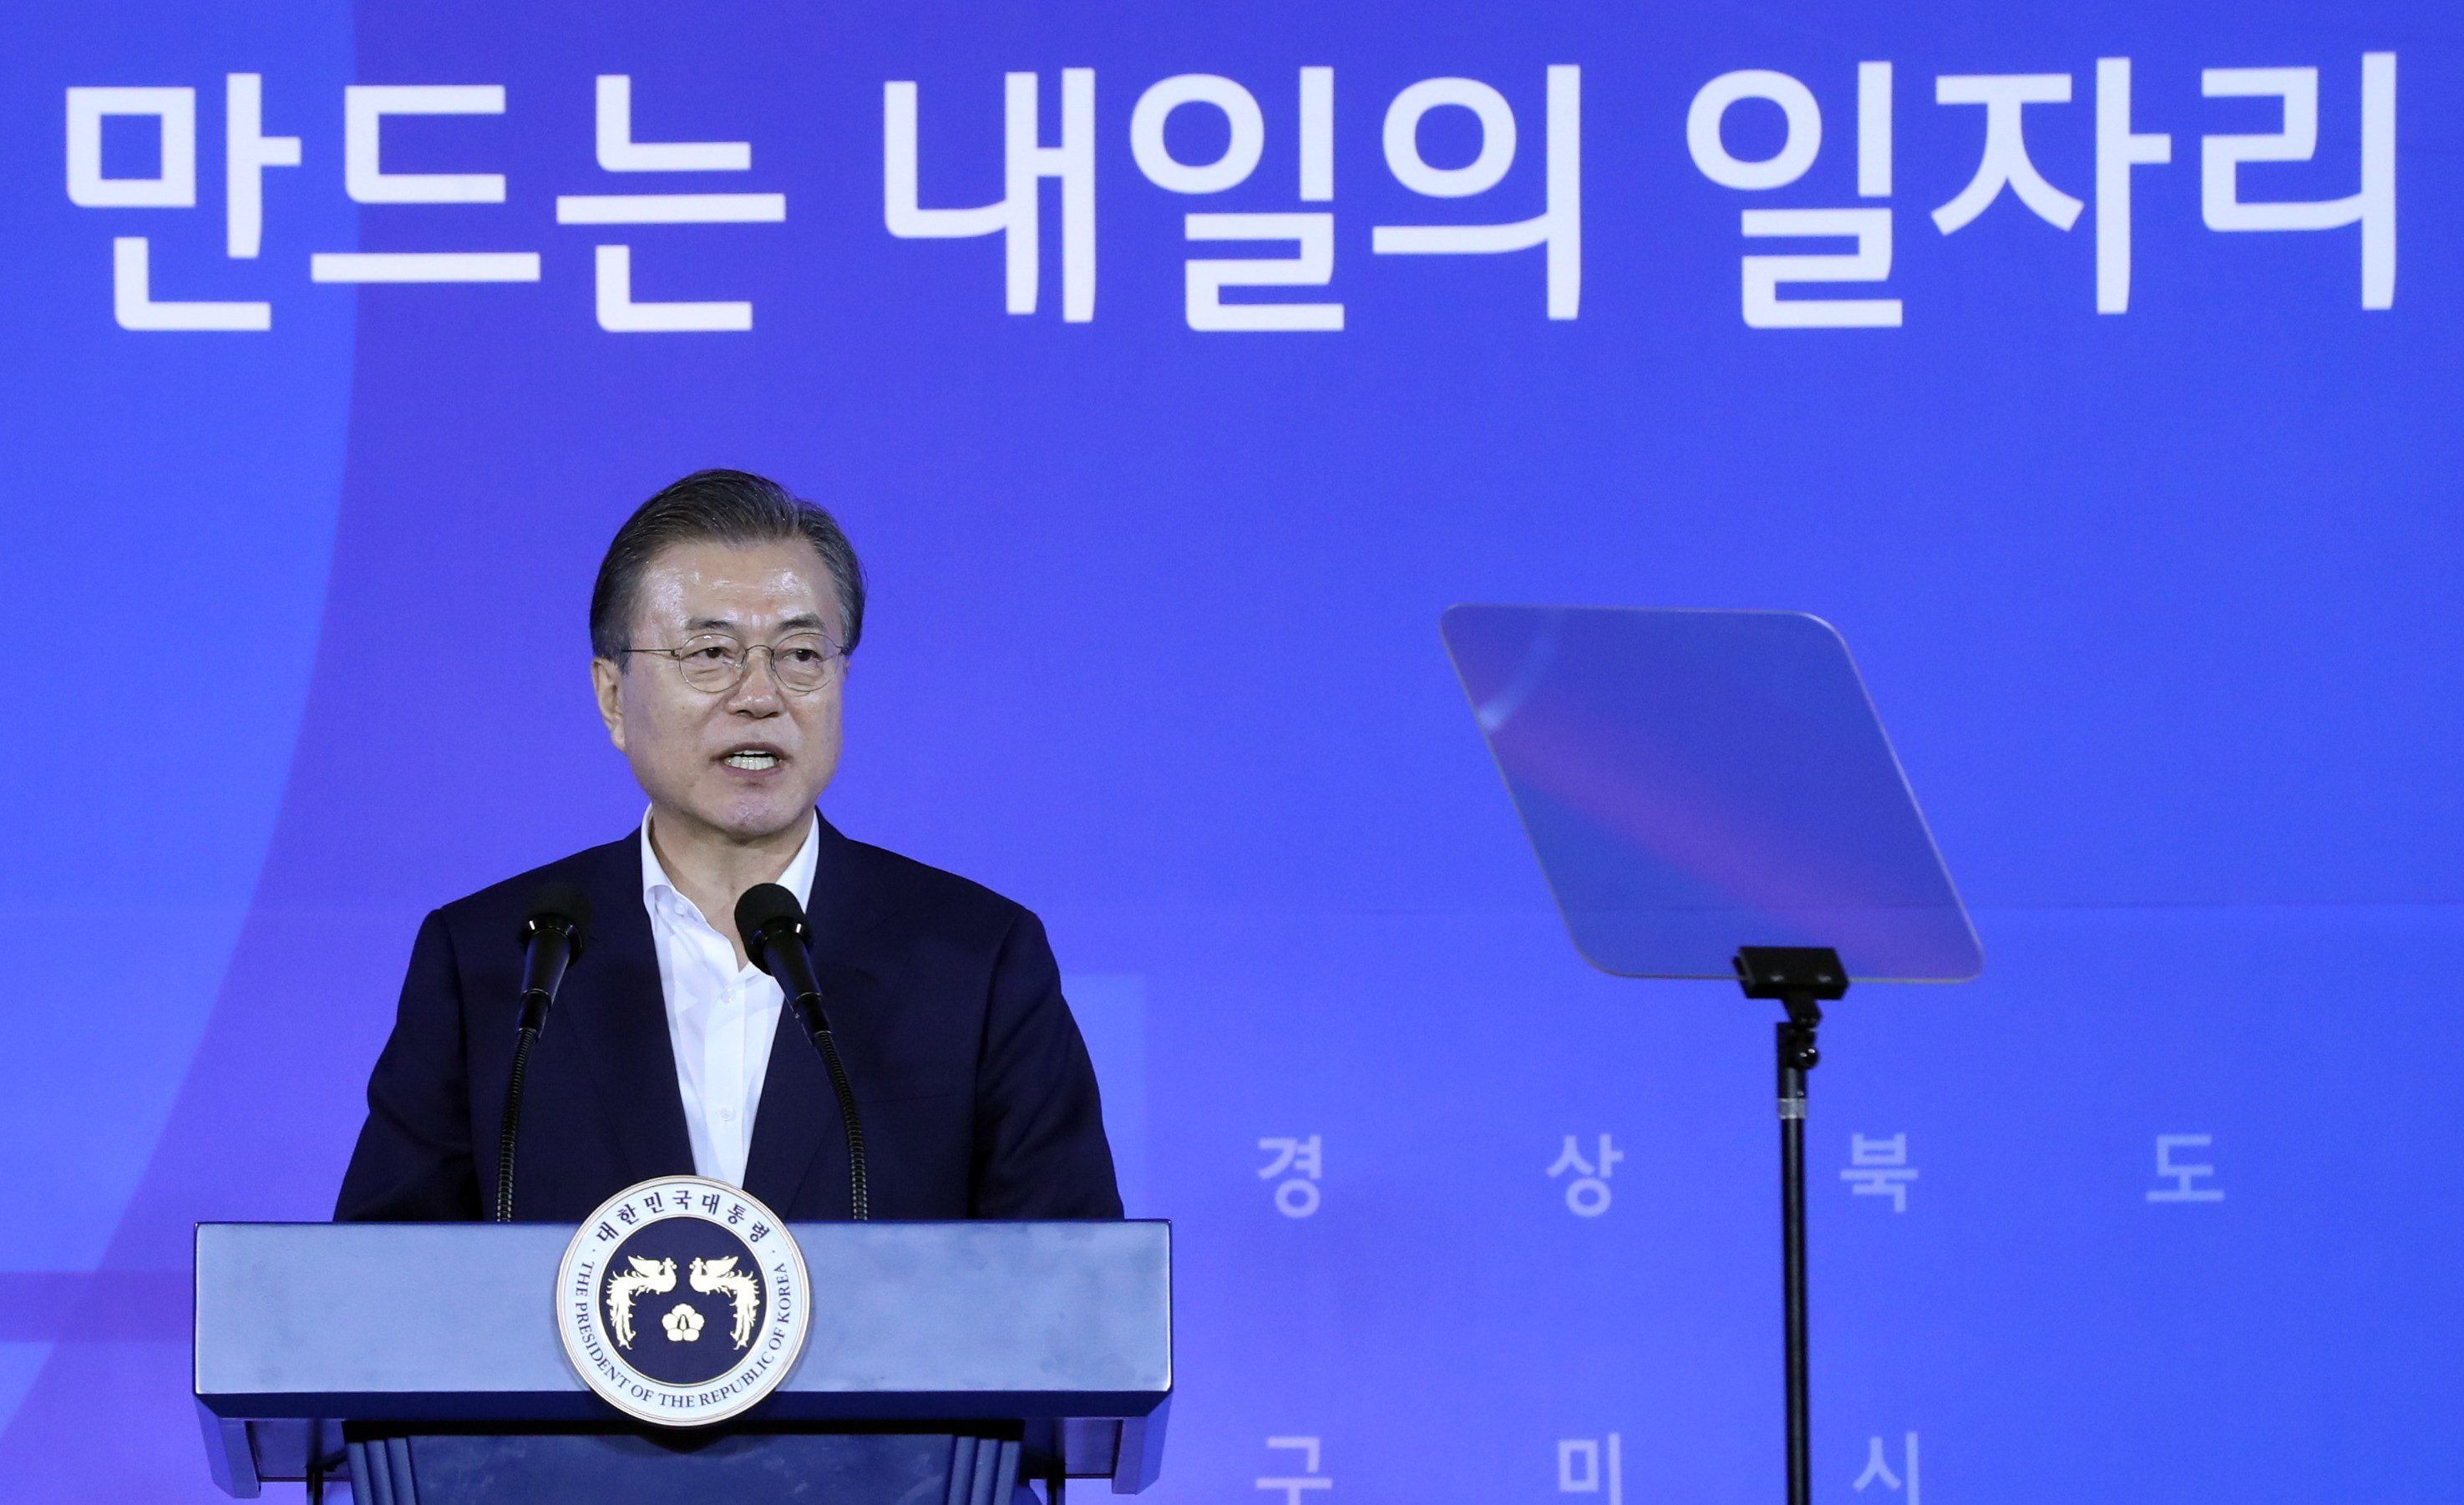 Moon Jae in president Corea   EFE